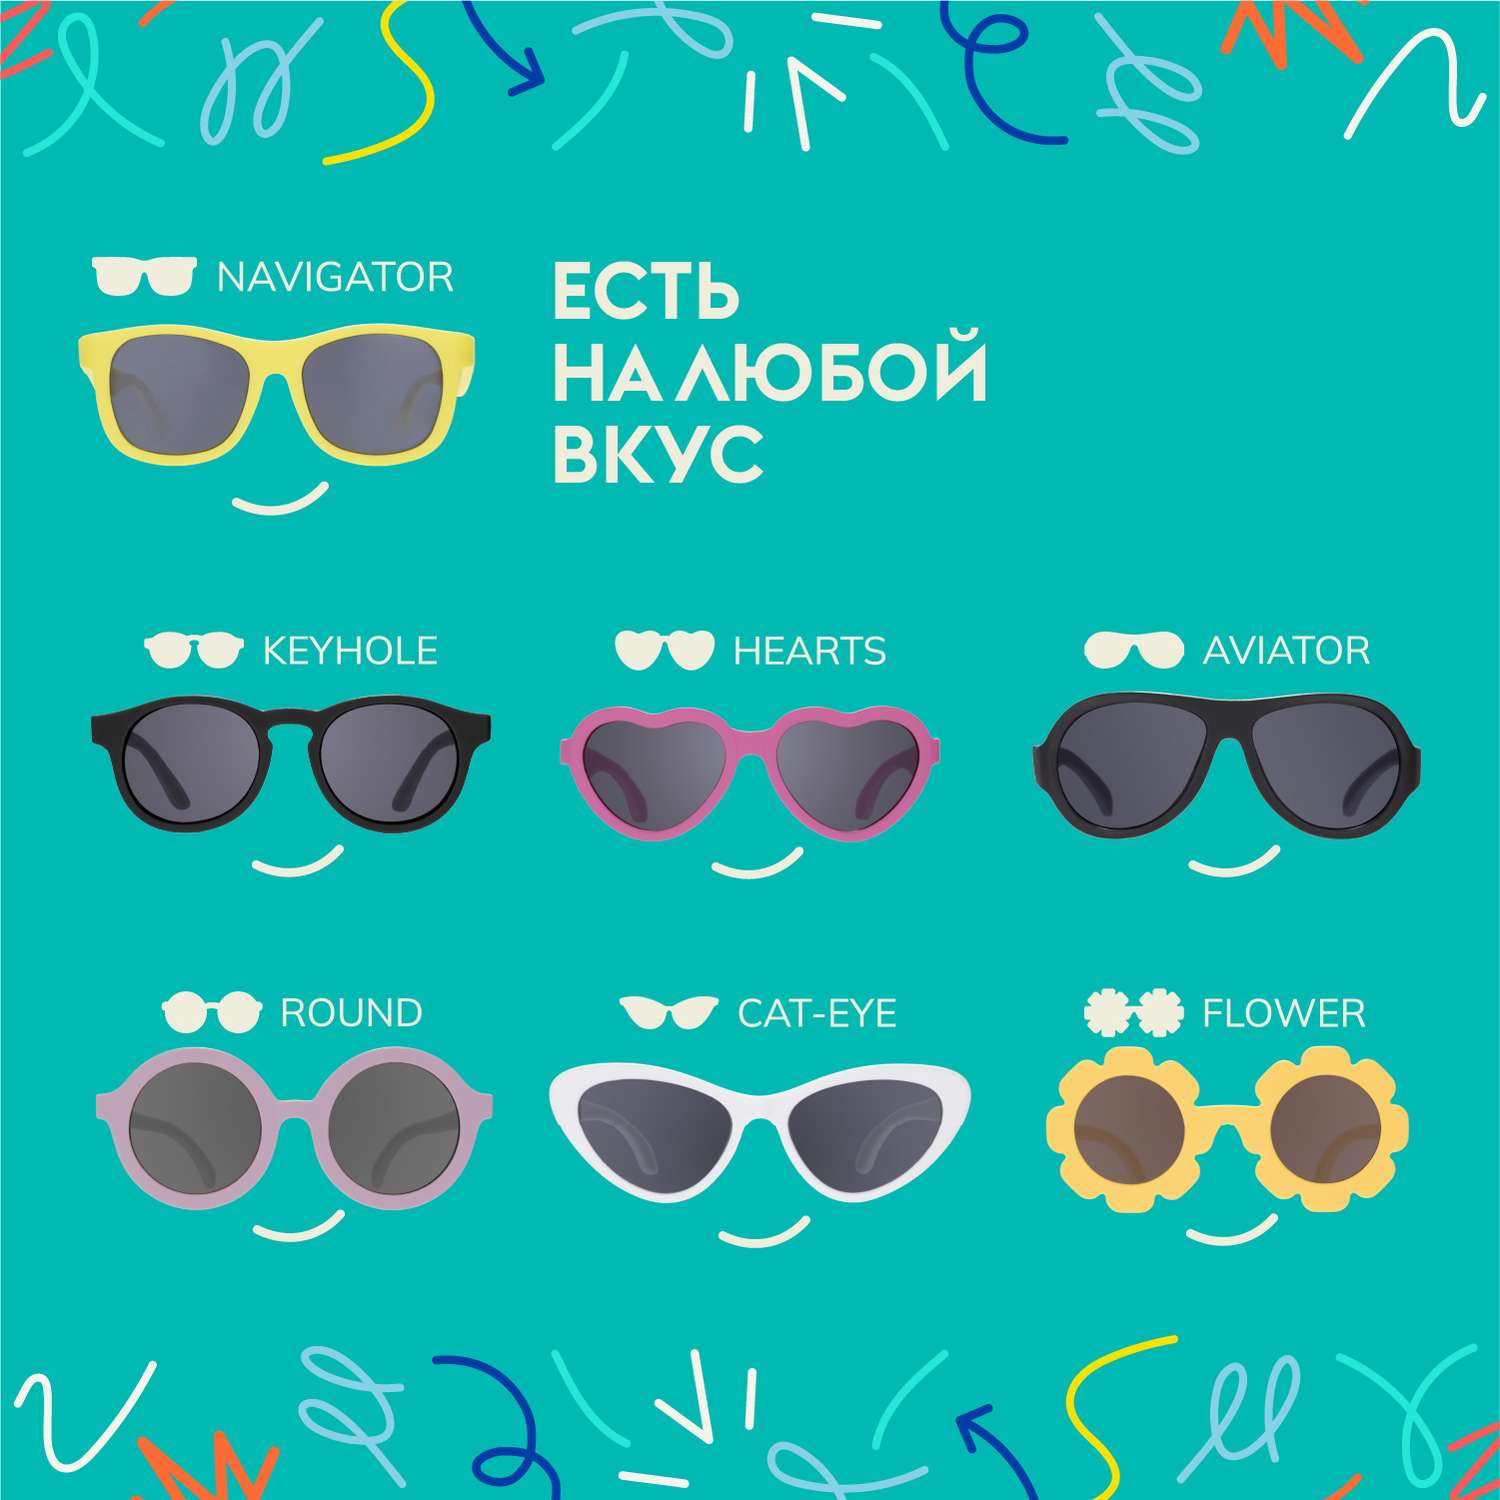 Солнцезащитные очки Babiators Original Cat-Eye Розовая леди 3-5 CAT-008 - фото 6